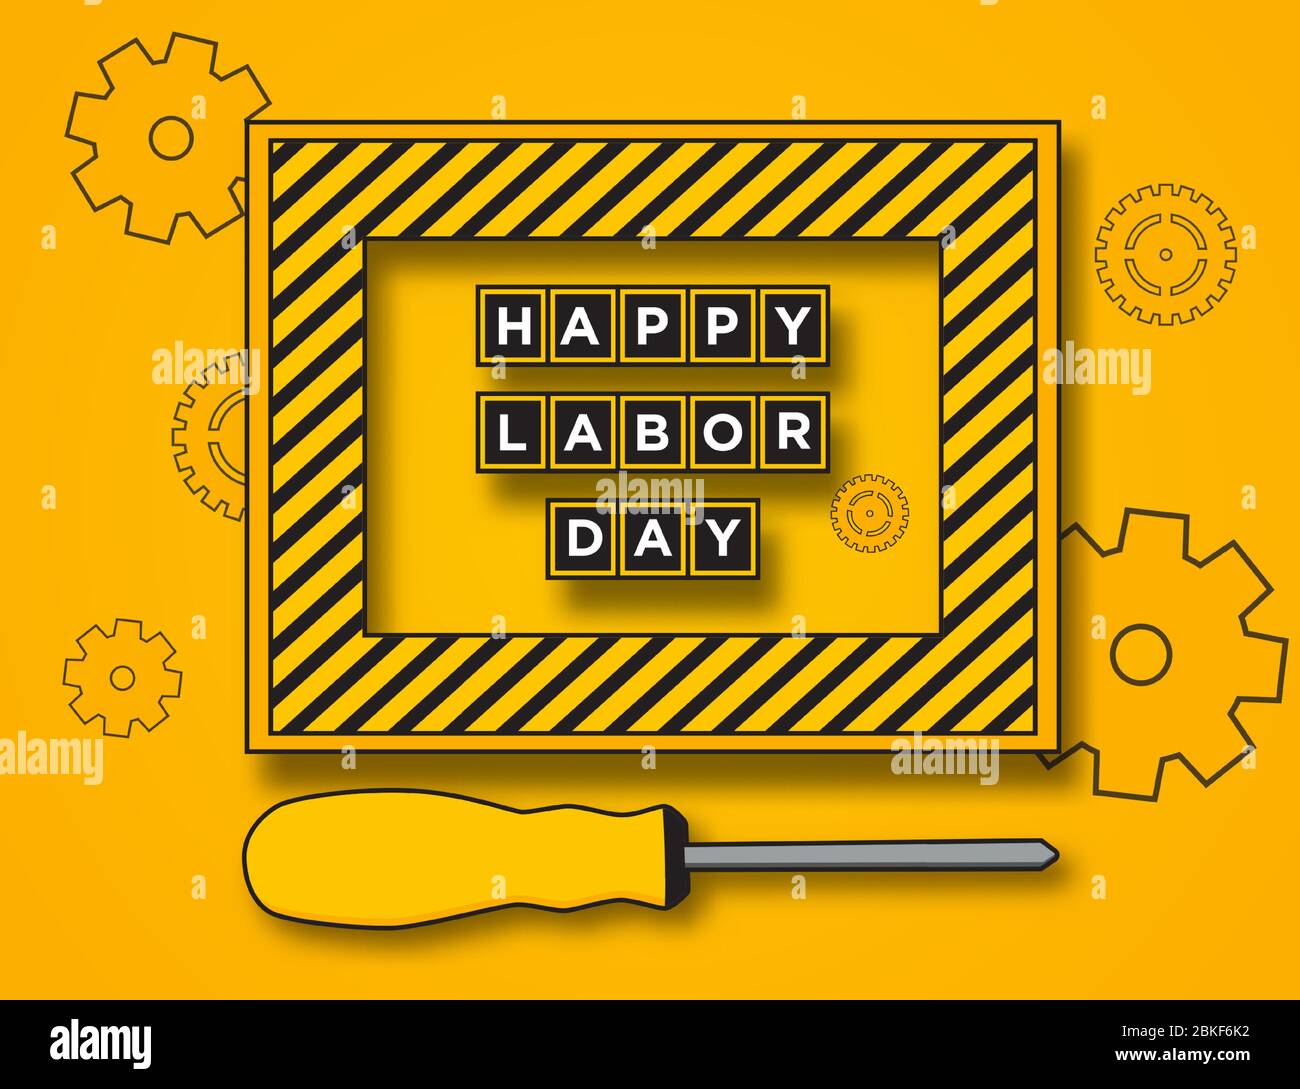 Happy Labor Day Poster oder Banner-Design in Gelb und Schwarz. 1. Mai Internationaler Tag Der Arbeit. Mit Abbildungen von Schraubendrehern und Rahmen. Stock Vektor